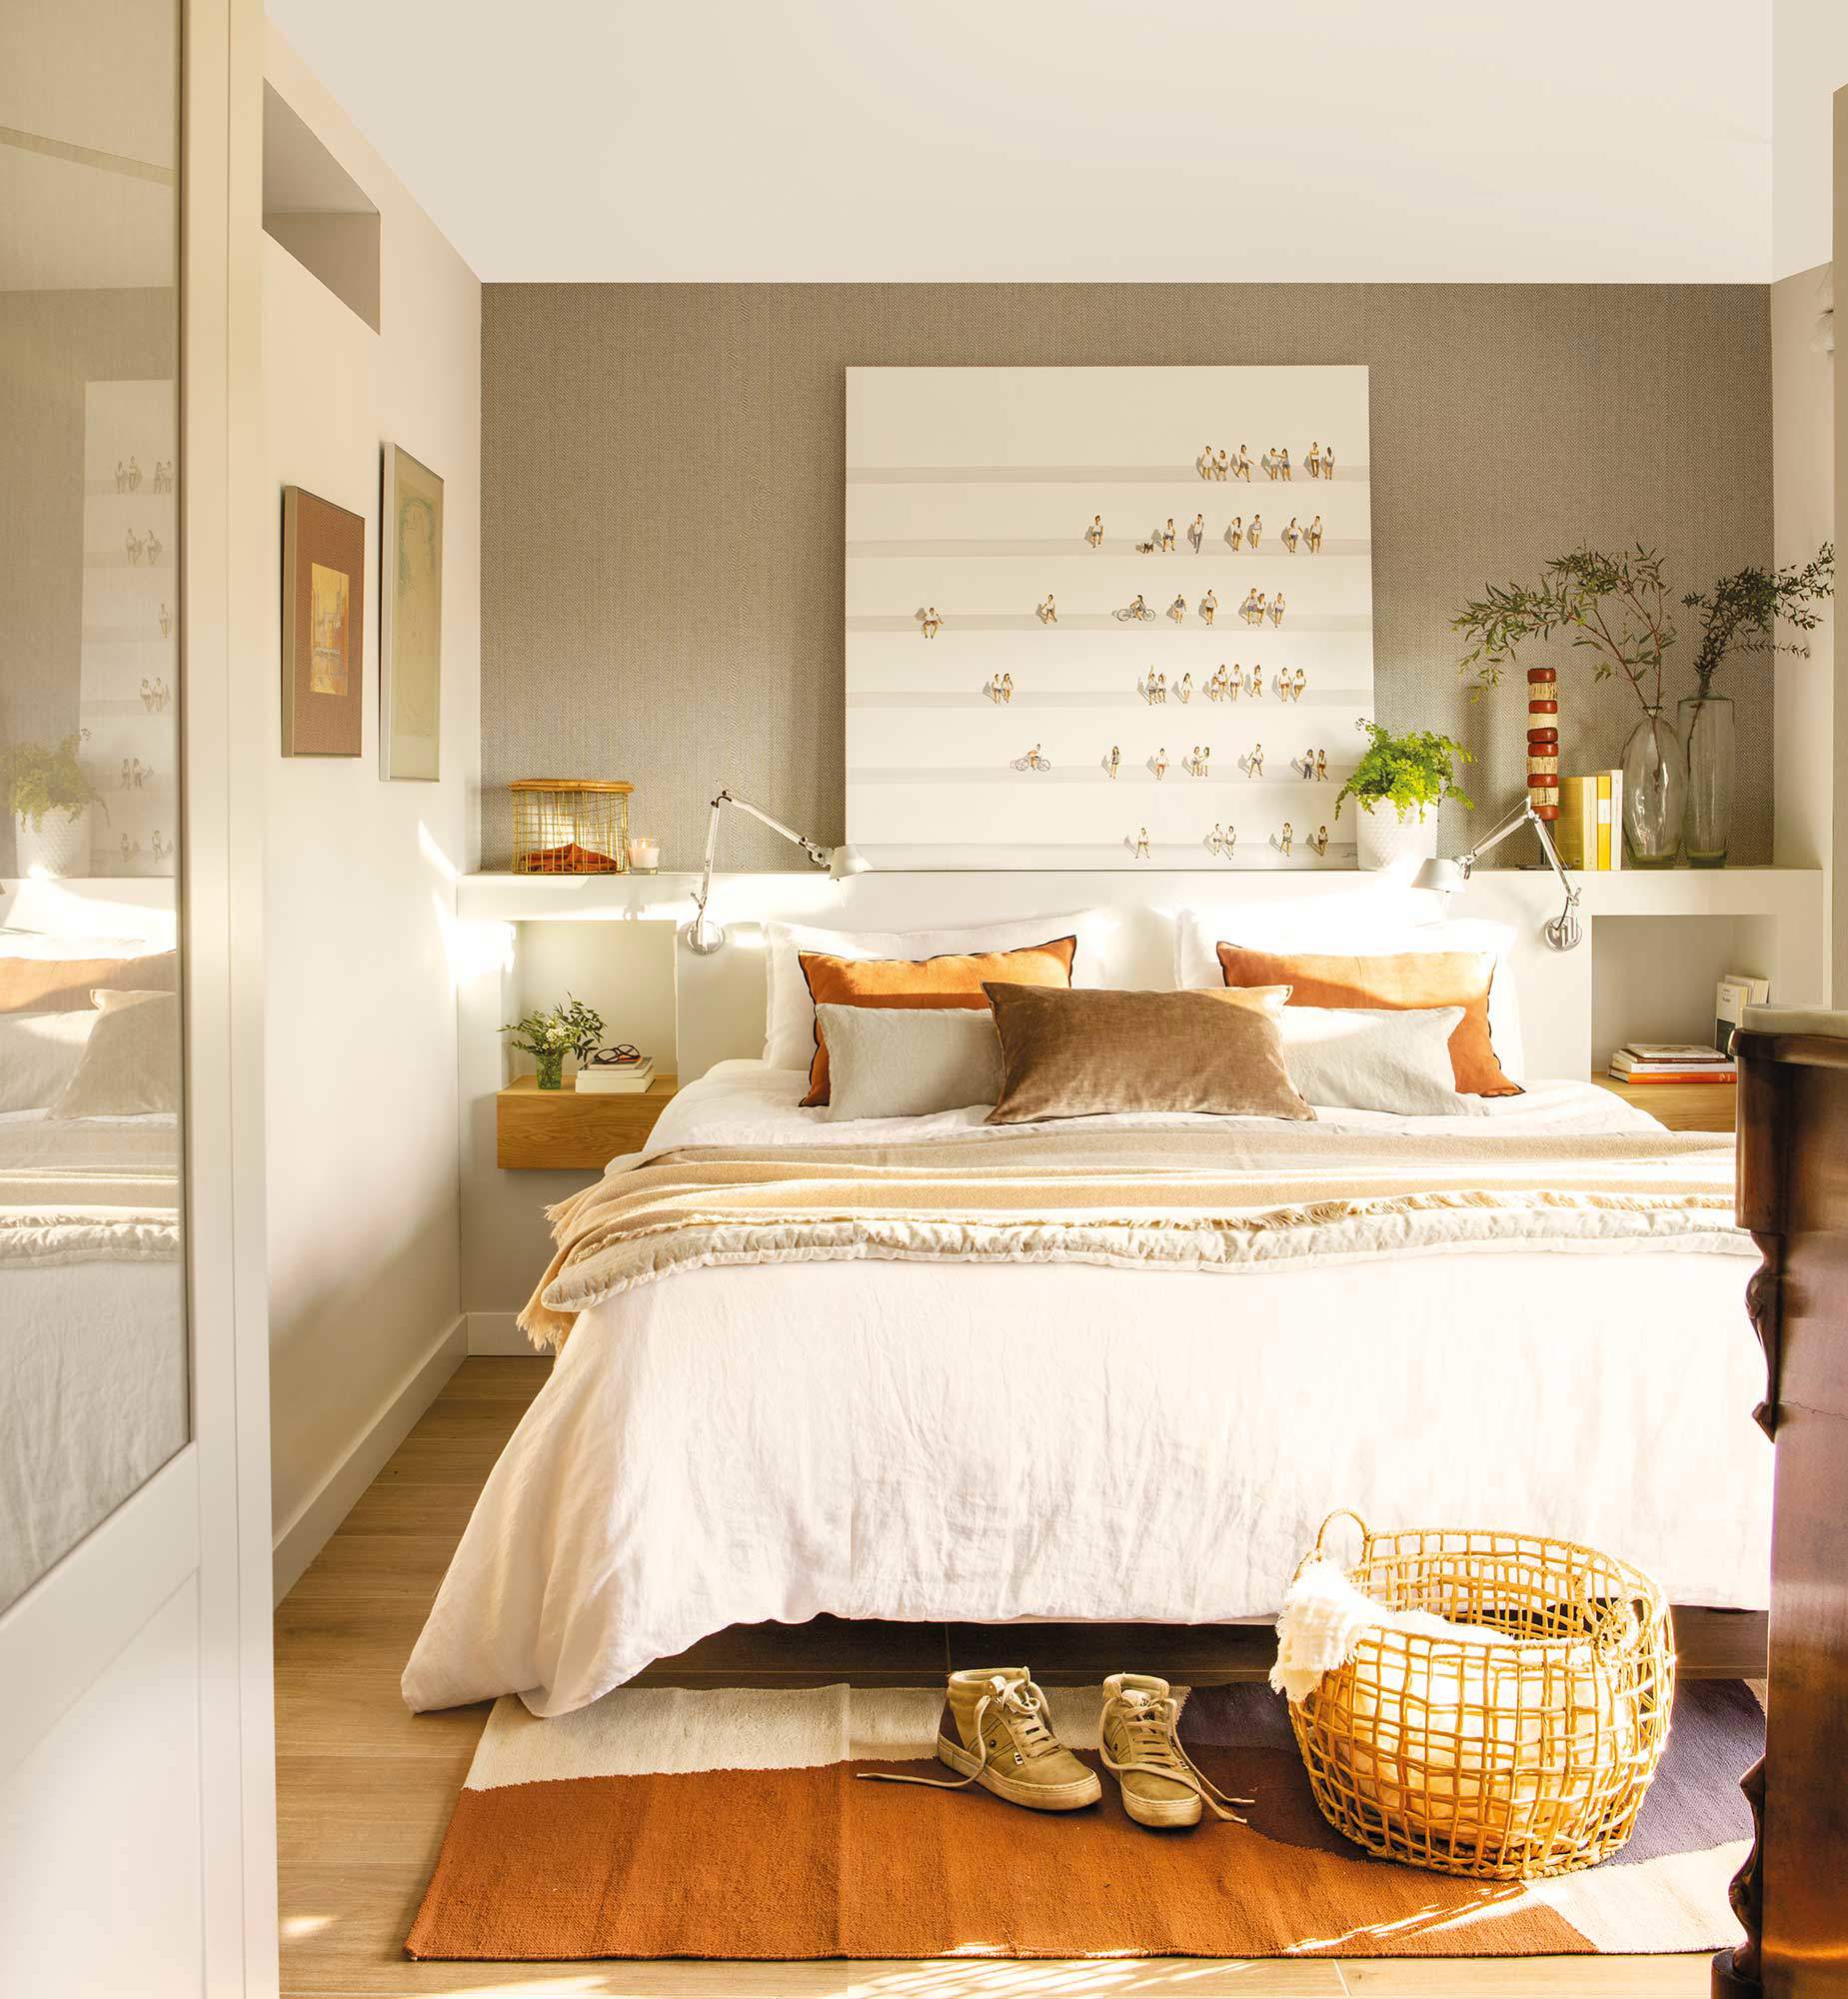  Dormitorio de matrimonio moderno con cabecero de obra y papel pintado en espiga.